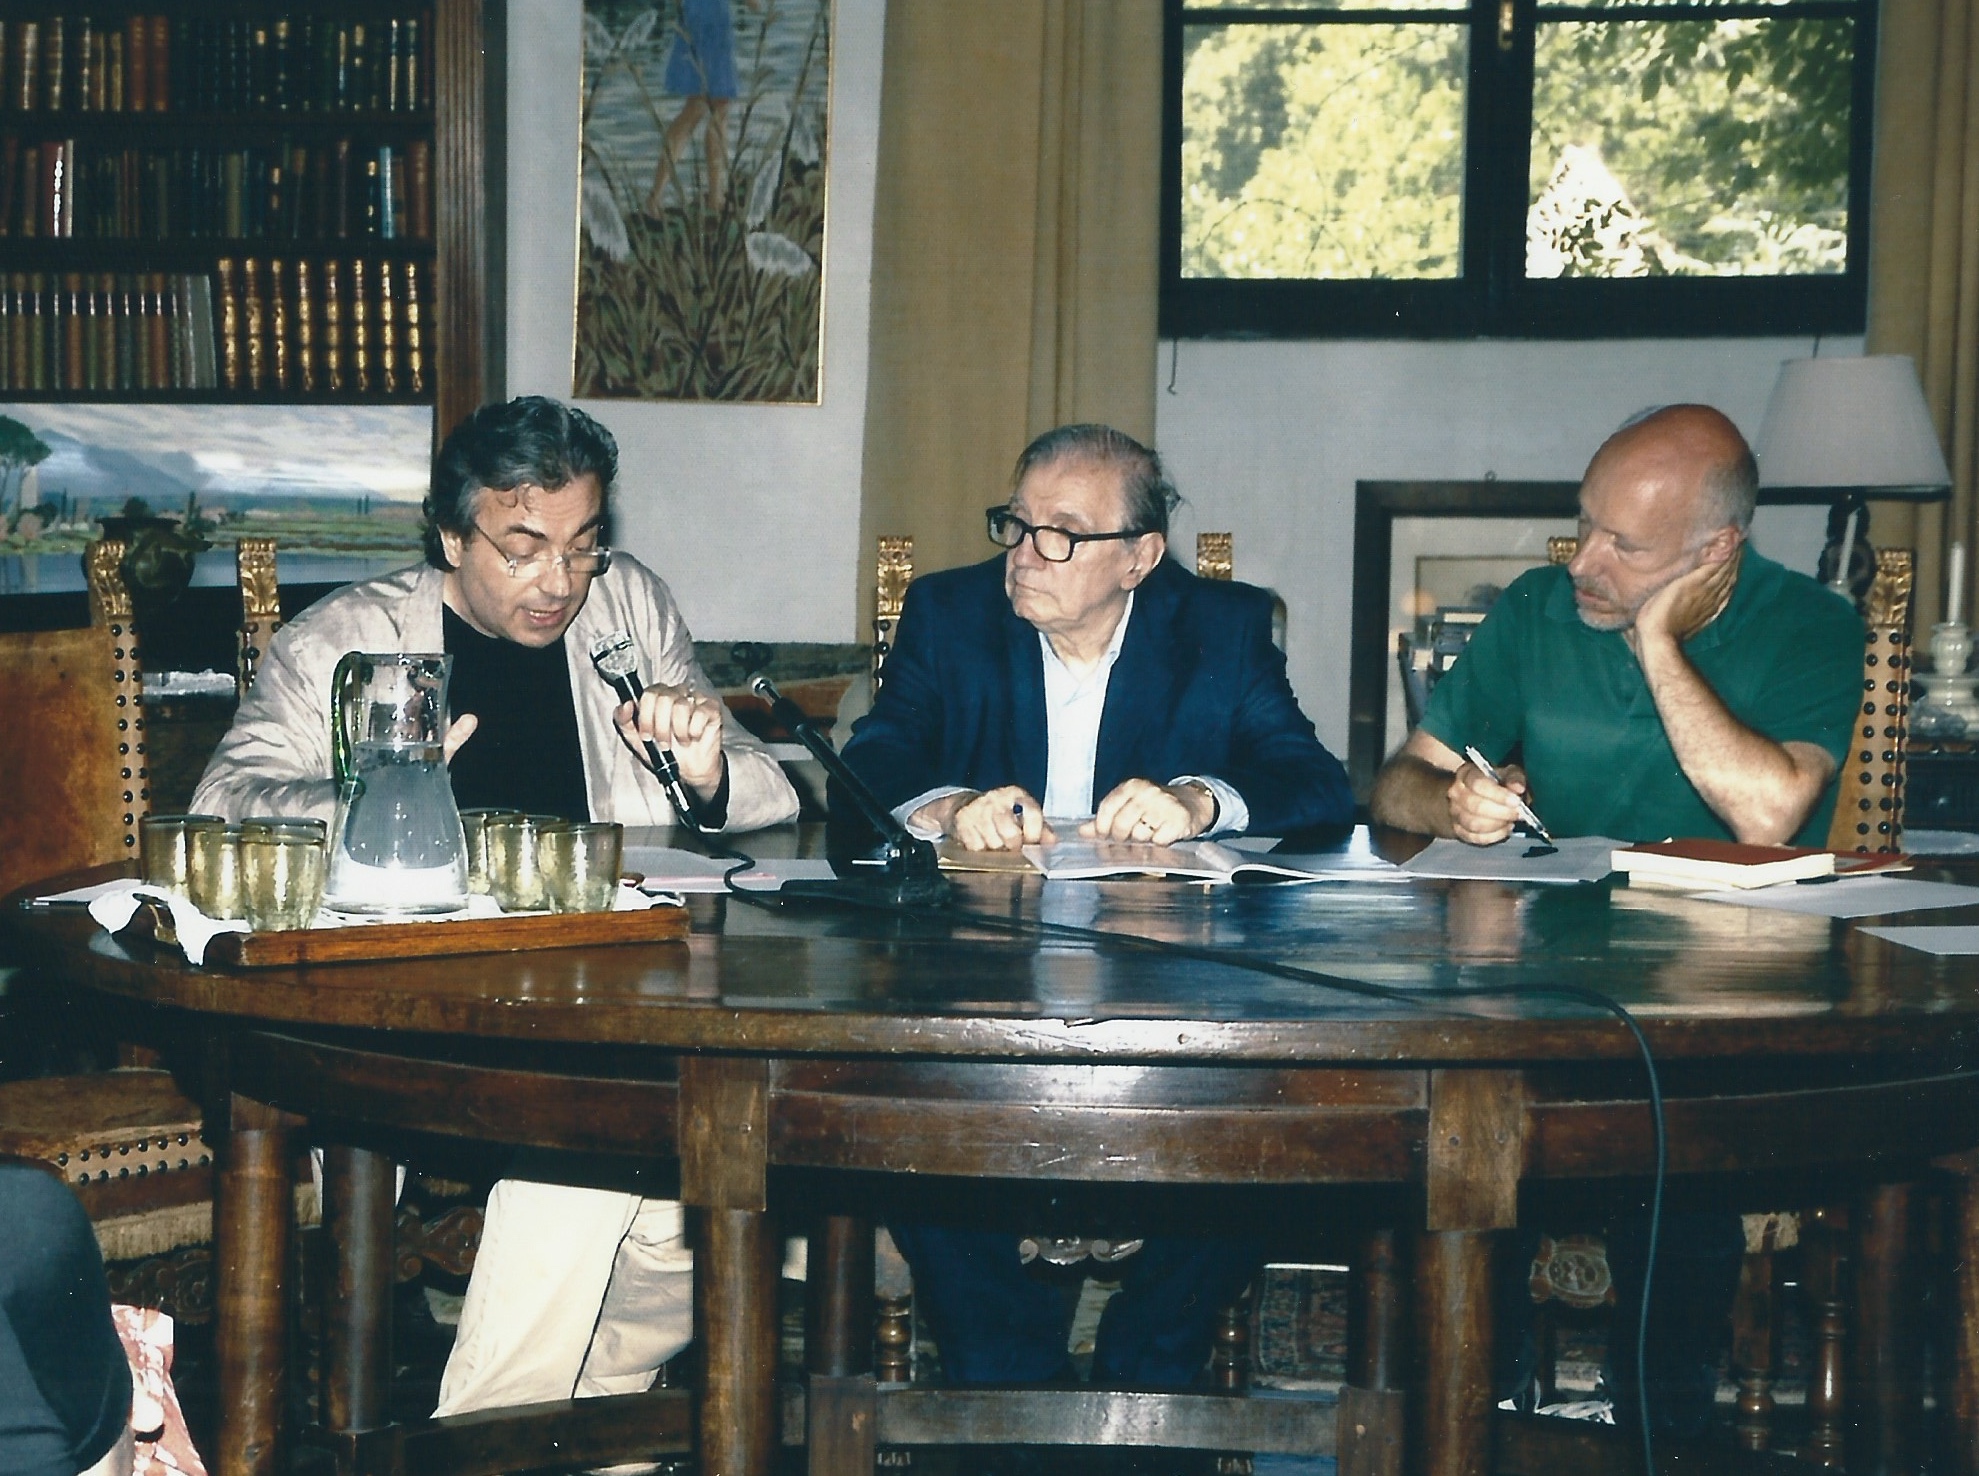 MARIO MESSINIS, ALBERTO CAPRIOLI AND STEFANO CATUCCI. SERMONETA, GIARDINI DI NINFA, JUNE 2007